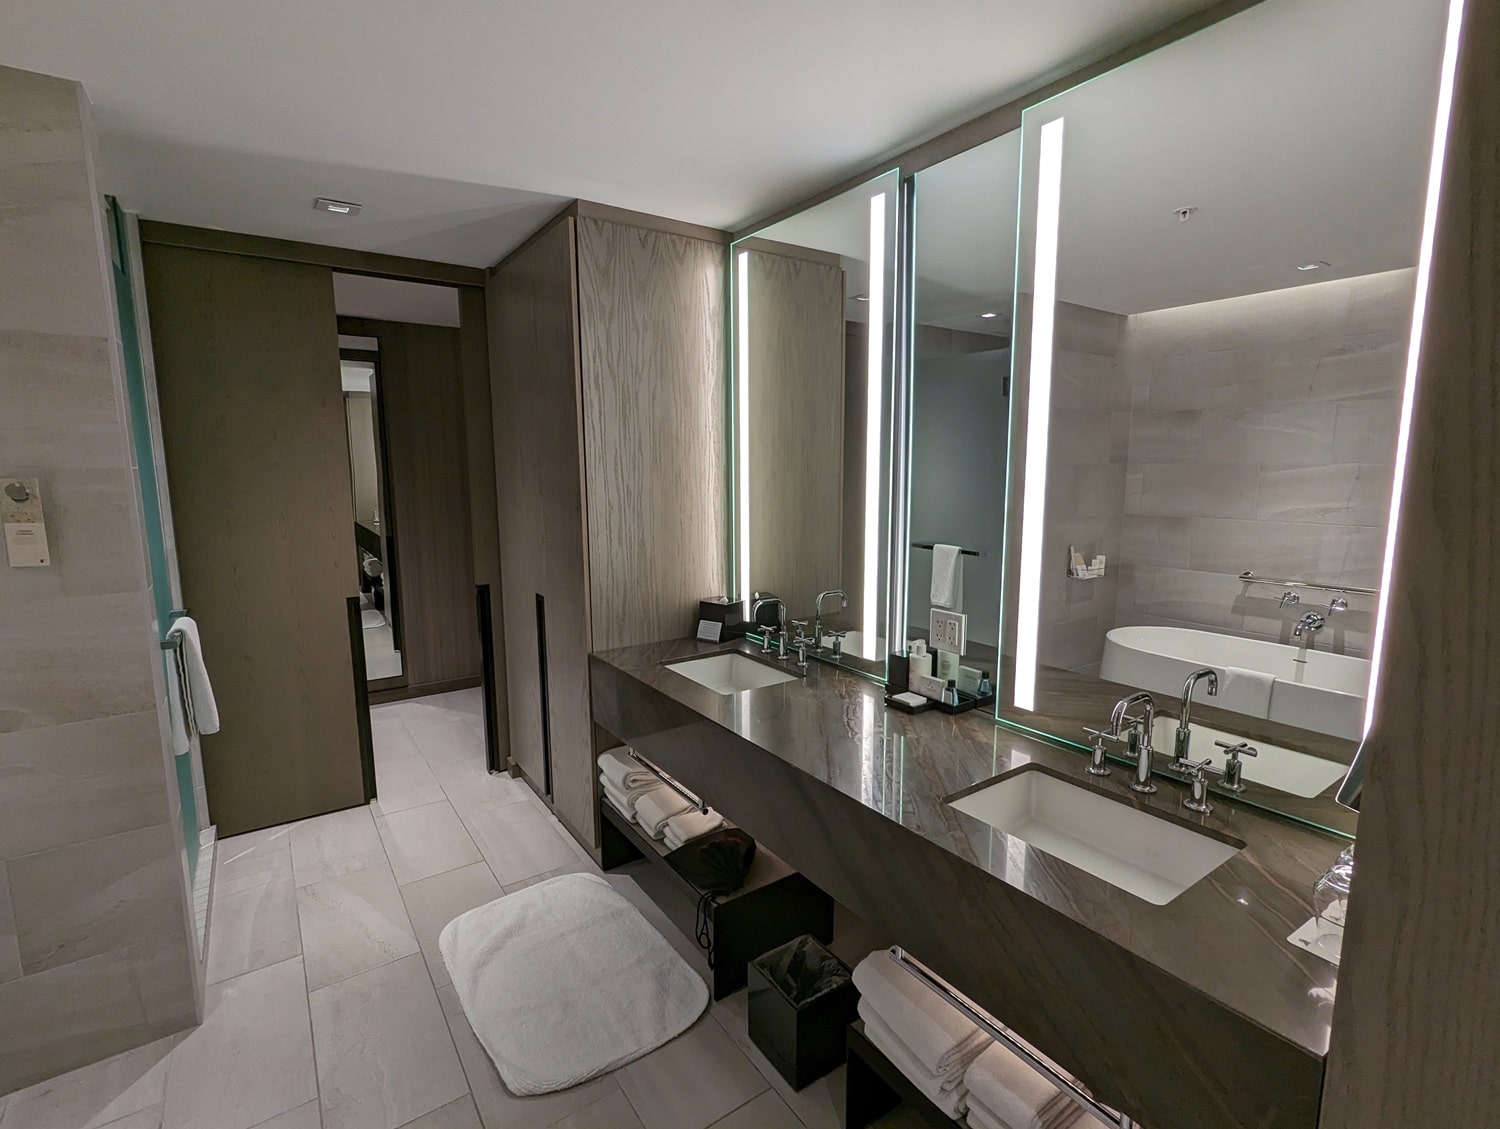 jw marriott edmonton one bedroom executive suite double vanity